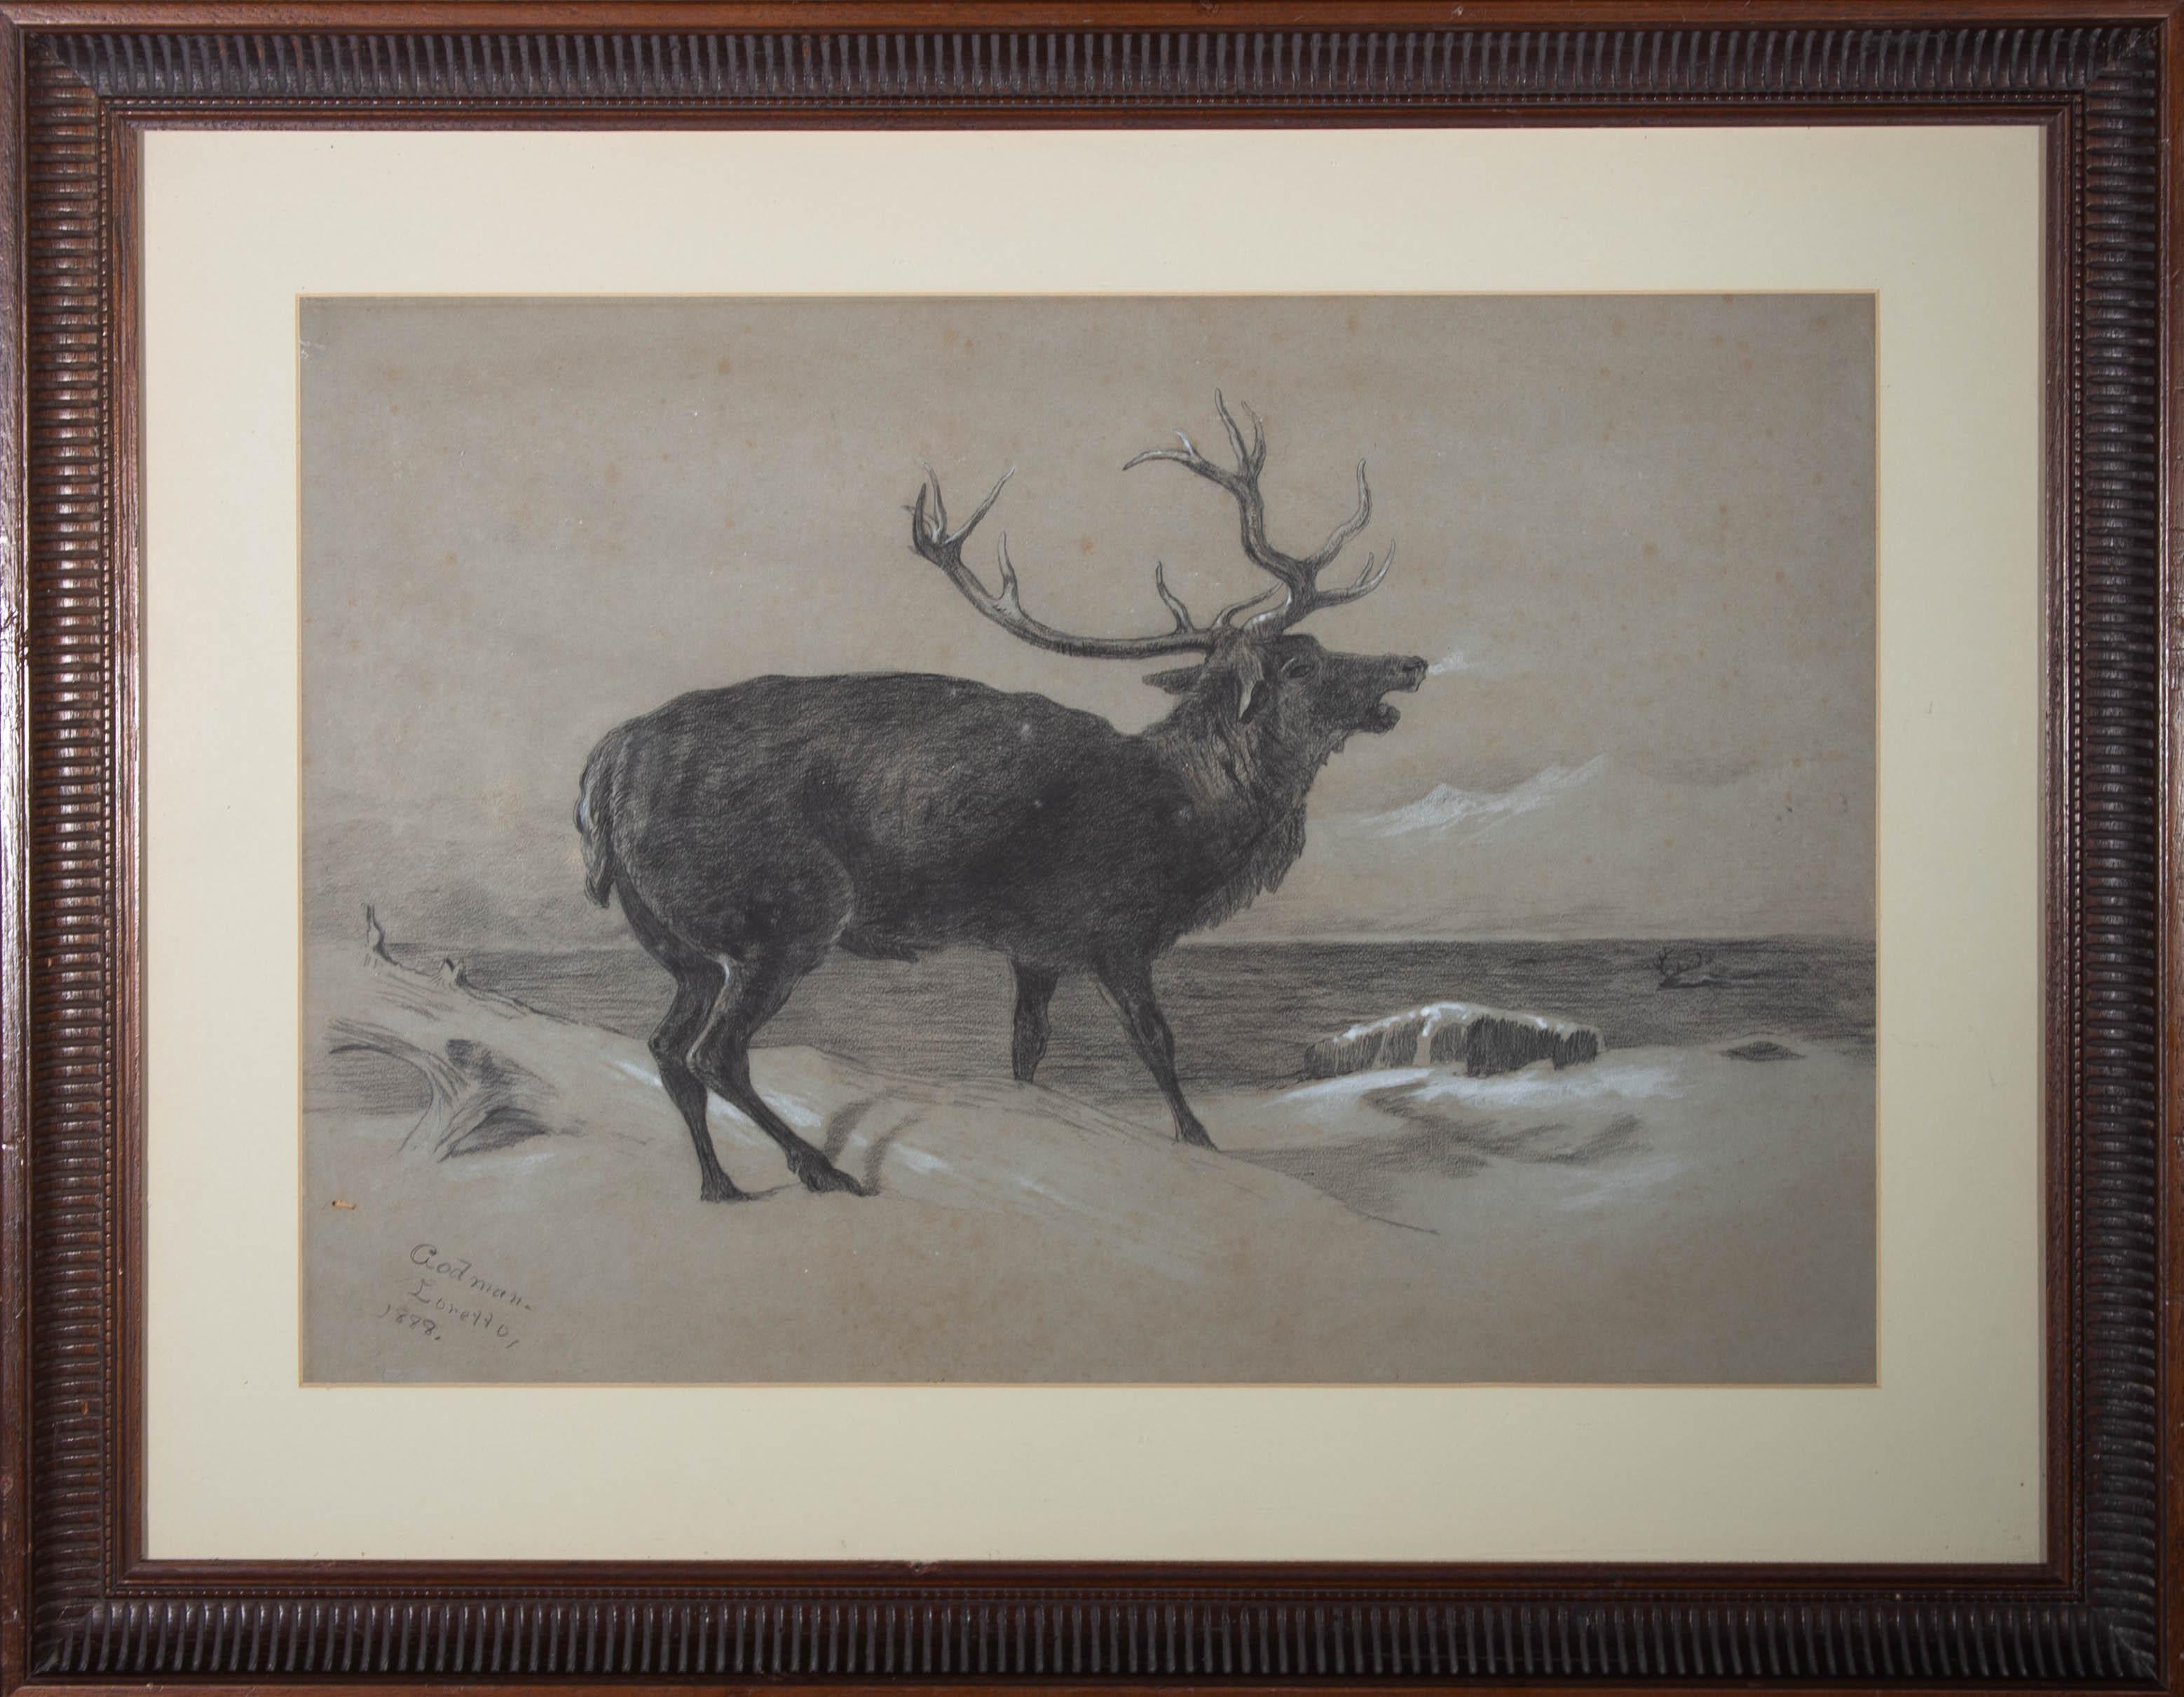 Eine eindrucksvolle Kohlestudie aus dem späten 19. Jahrhundert, die einen majestätischen Hirsch zeigt, der im Schnee steht und über das Wasser röhrt. Der Künstler hat links unten signiert und datiert. Die Zeichnung ist in einem Holzrahmen mit